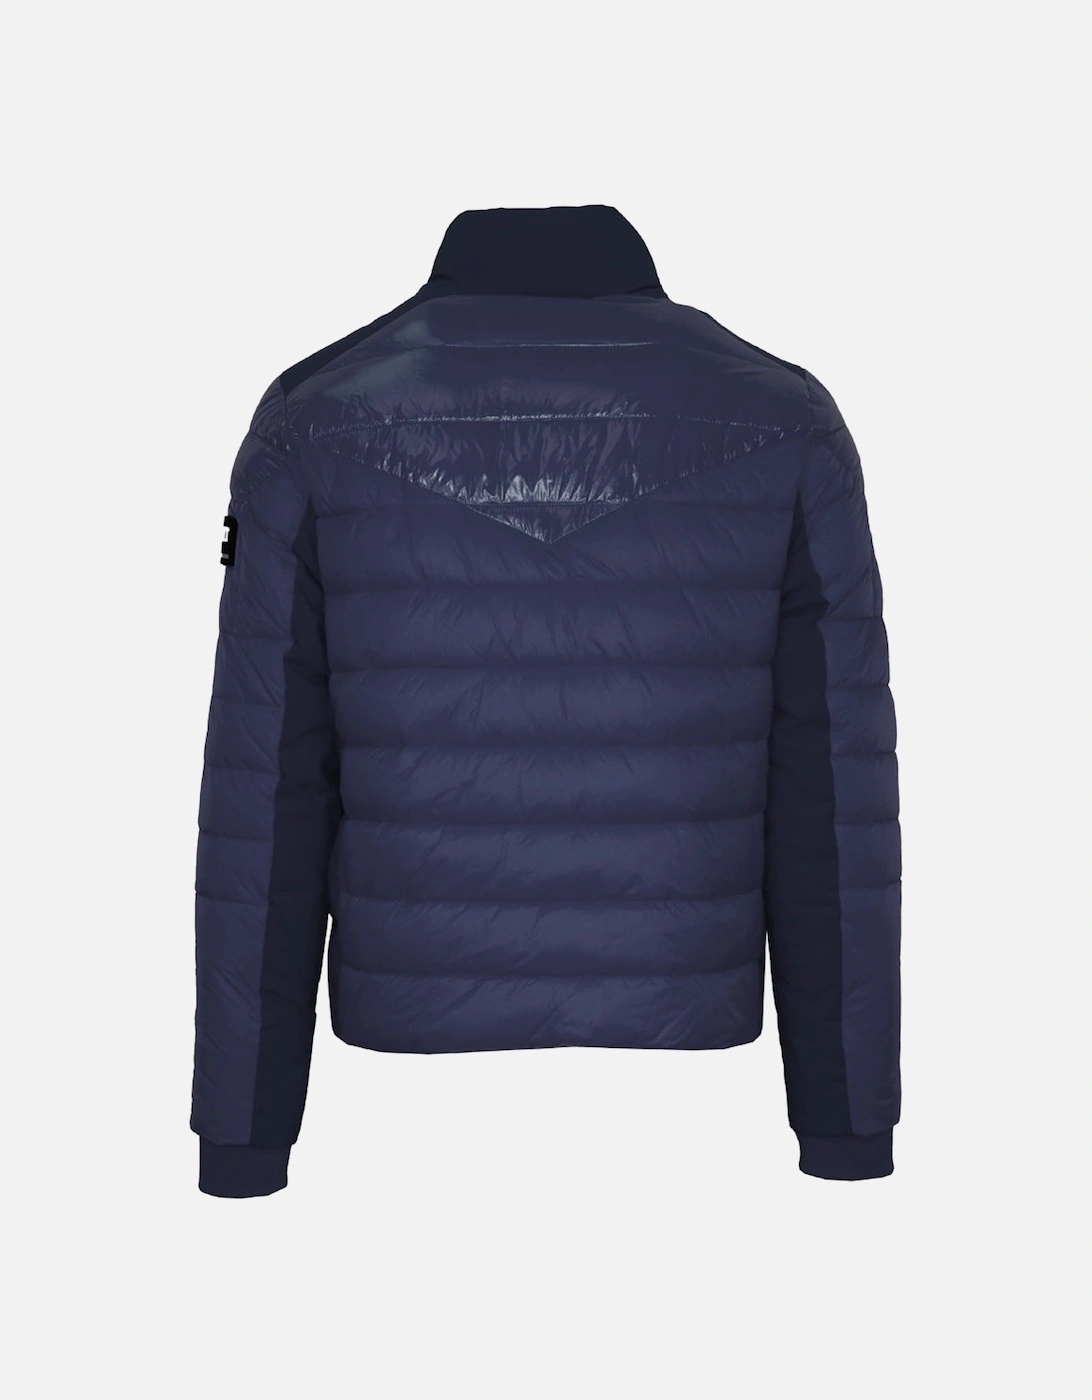 Plein Sport Plain Quilted Navy Blue Jacket